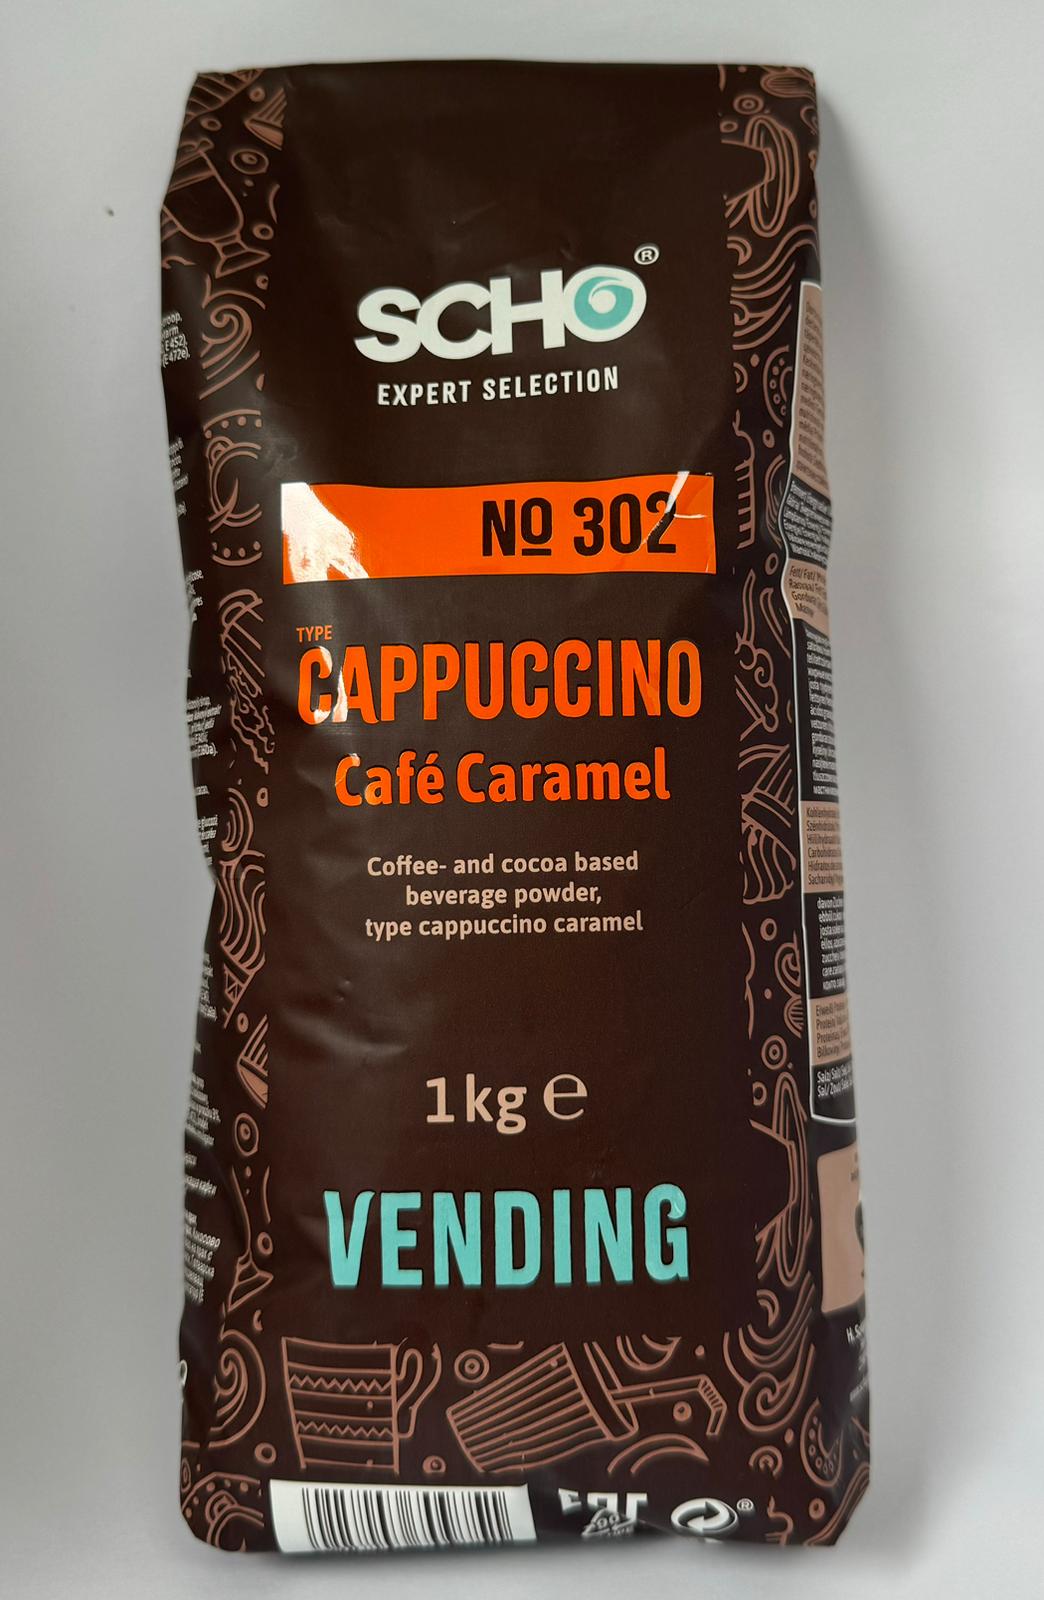 Bild von SCHO Cappuccino Café Caramel